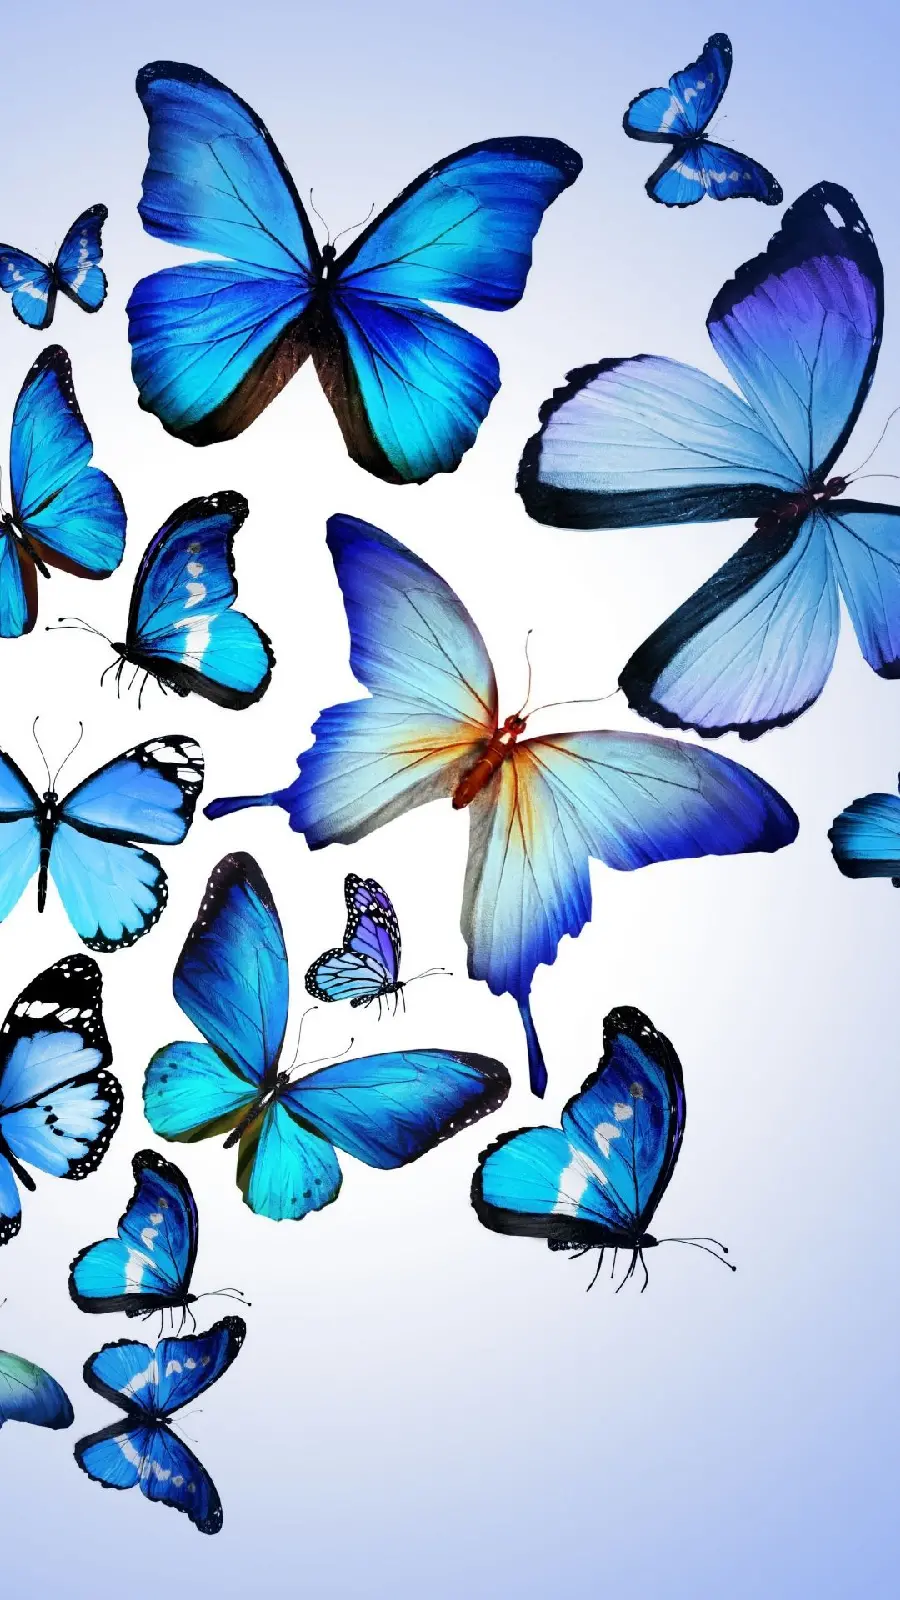 عکس زمینه آیفون با تم پروانه های آبی با بهترین کیفیت 